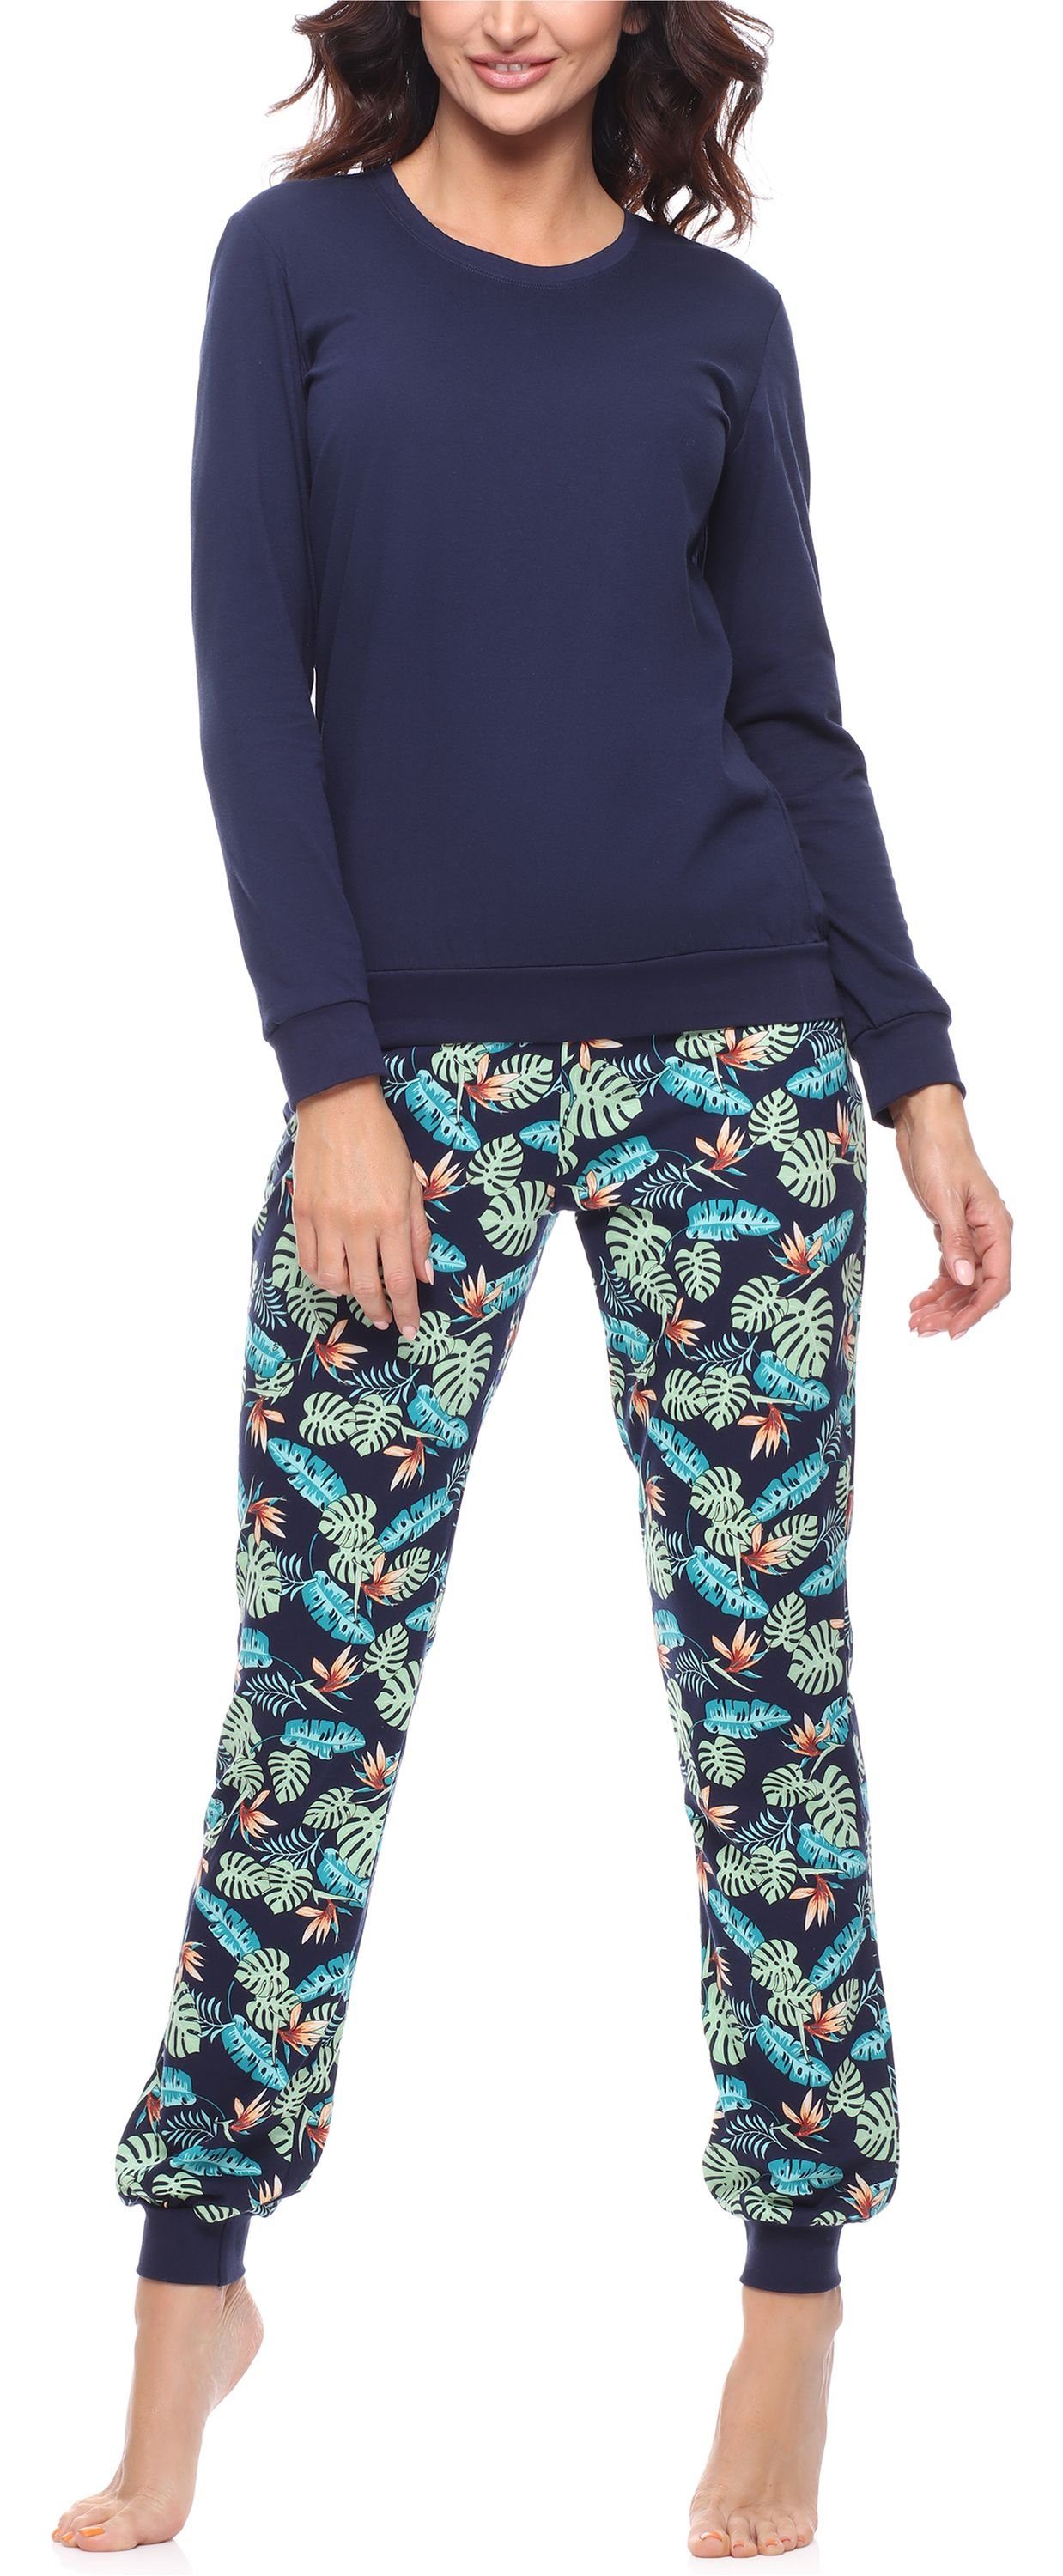 Merry Style Schlafanzug Marineblau/Blätter MS10-268 lang bunt mit Schlafanzug Pyjama Muster Damen Zweiteiler